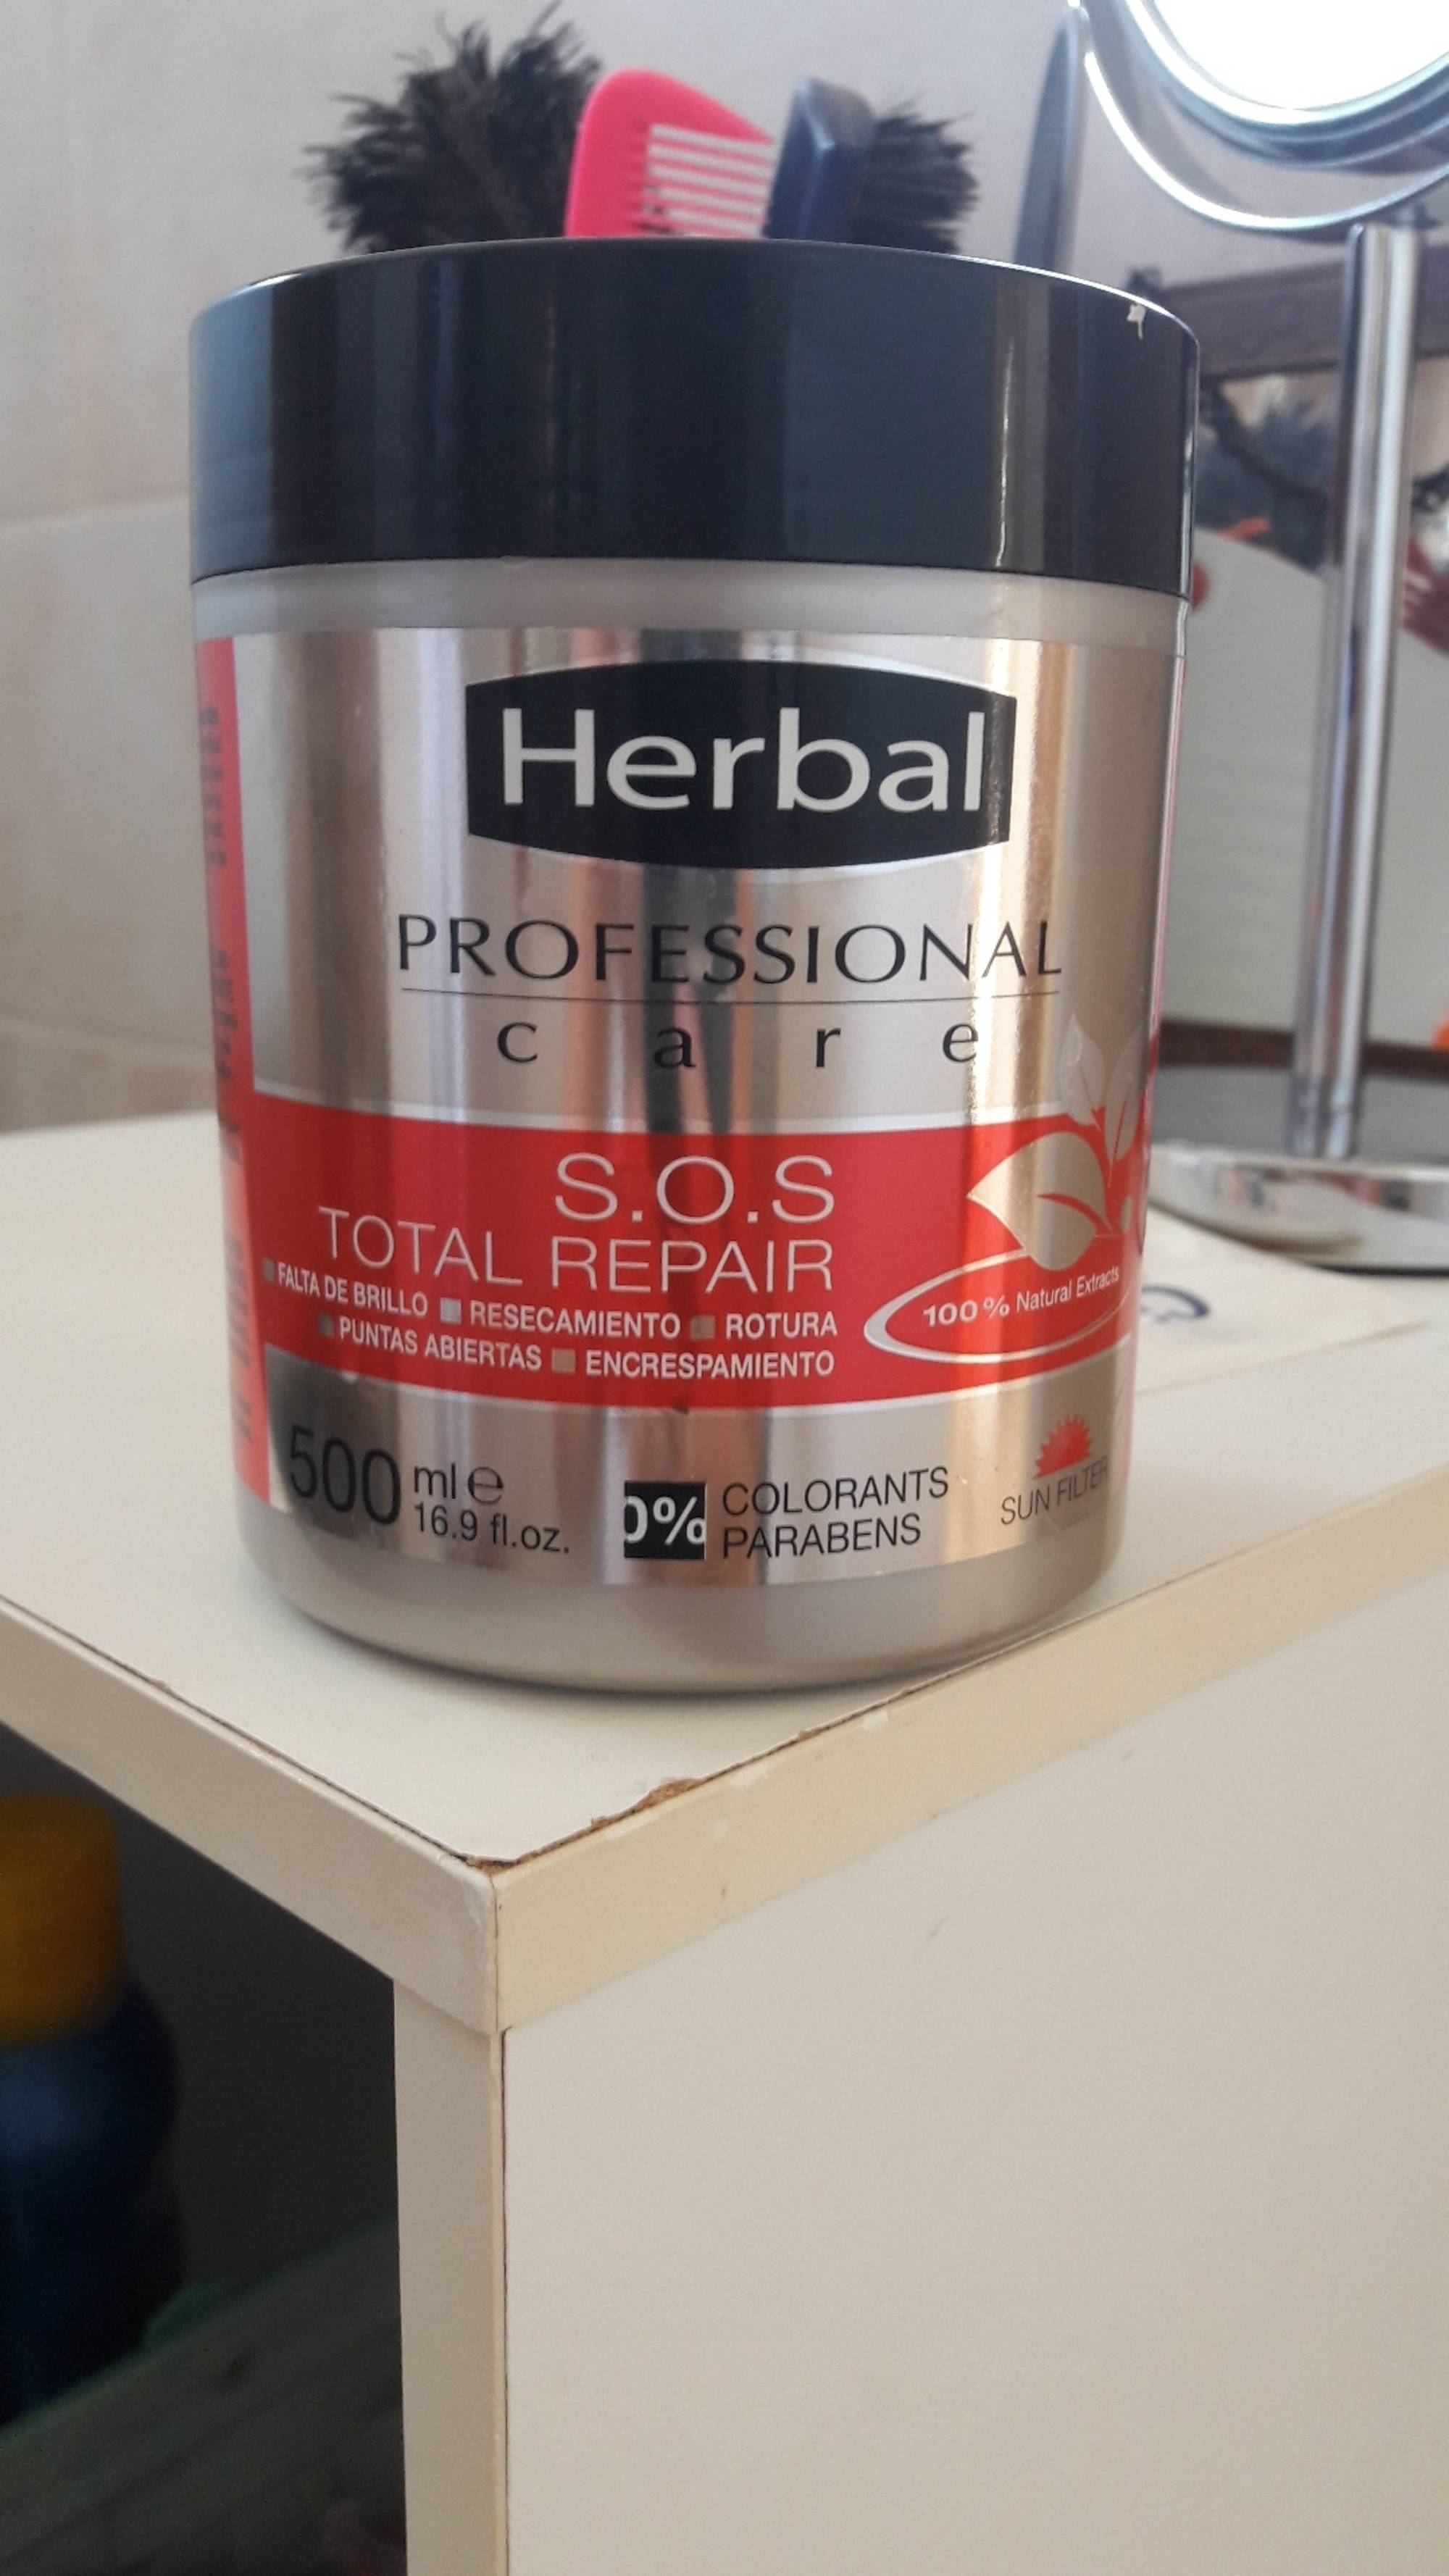 HERBAL - Professional care - Total repair